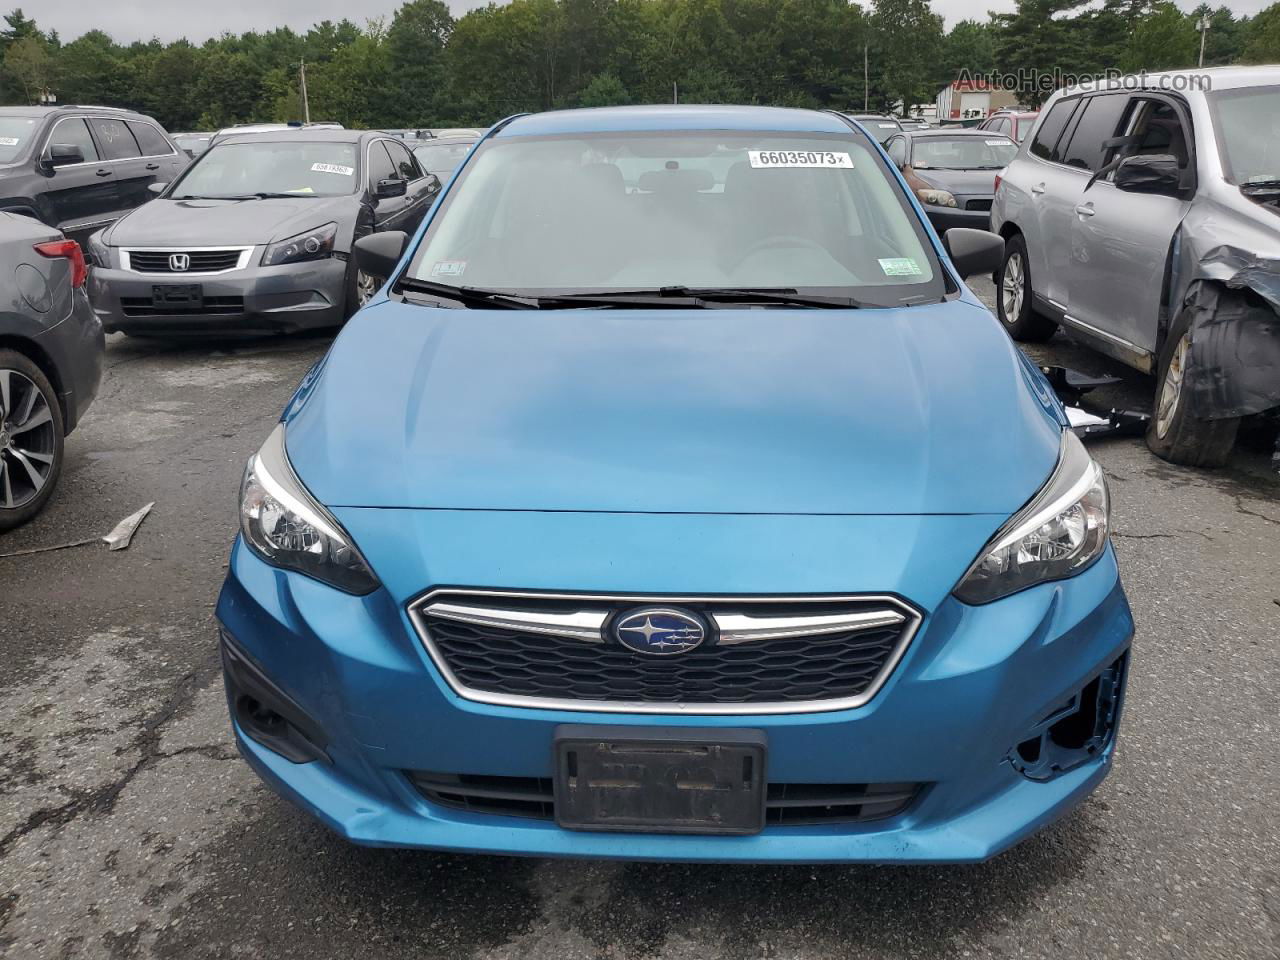 2018 Subaru Impreza  Синий vin: 4S3GTAA66J3740988